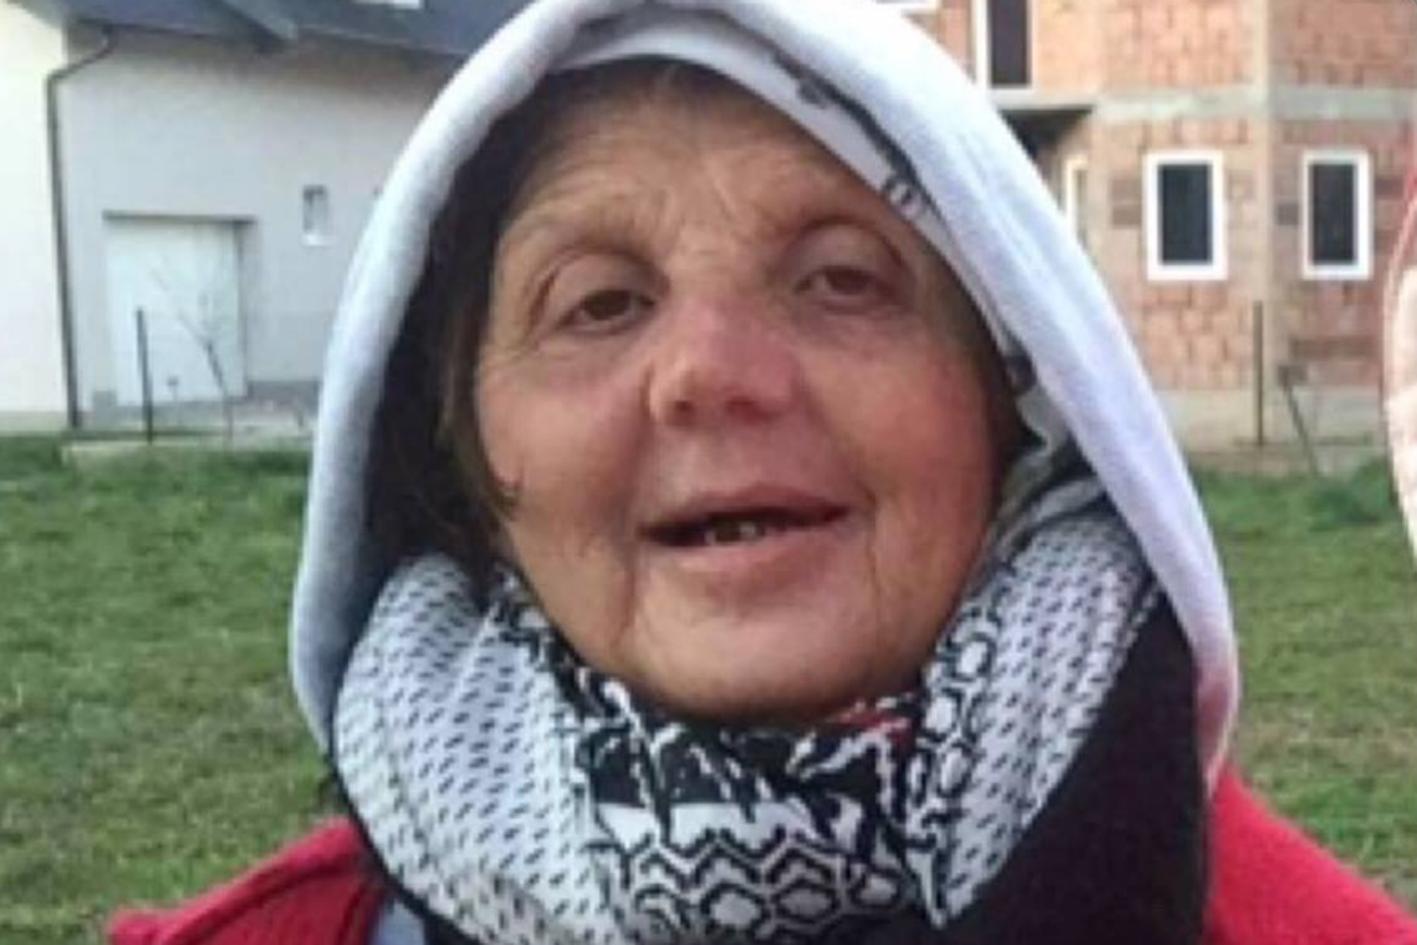 Potraga za nestalom Salihom Omerović nastavlja se sutra ujutro